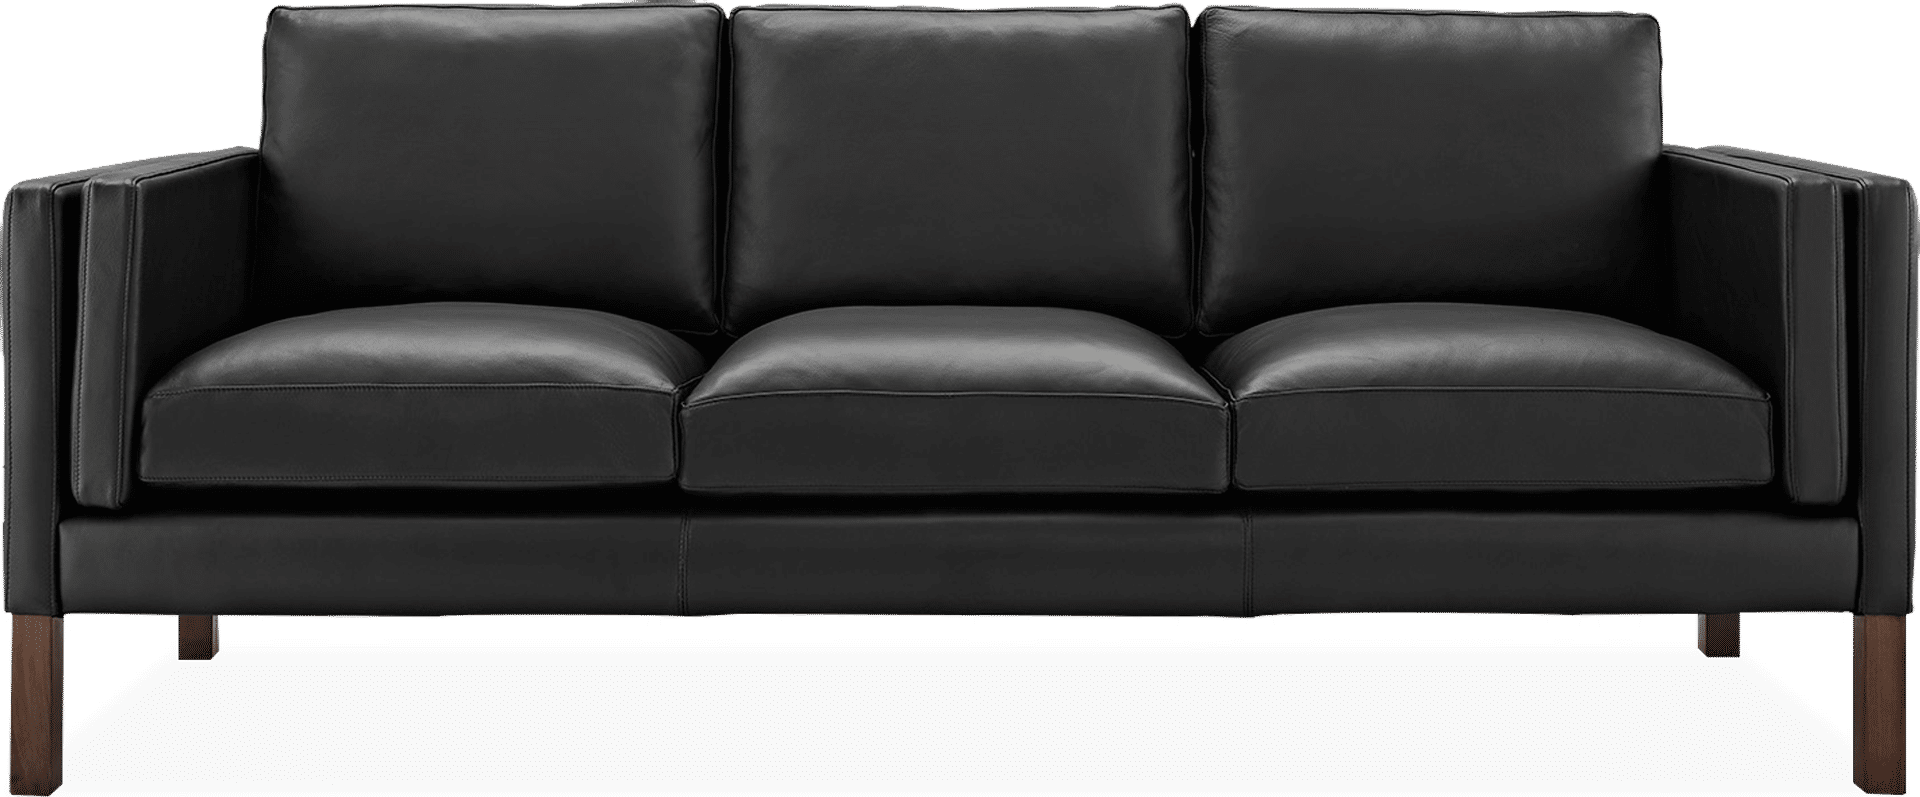 2333 Three Seater Sofa Premium Leather/Black  image.